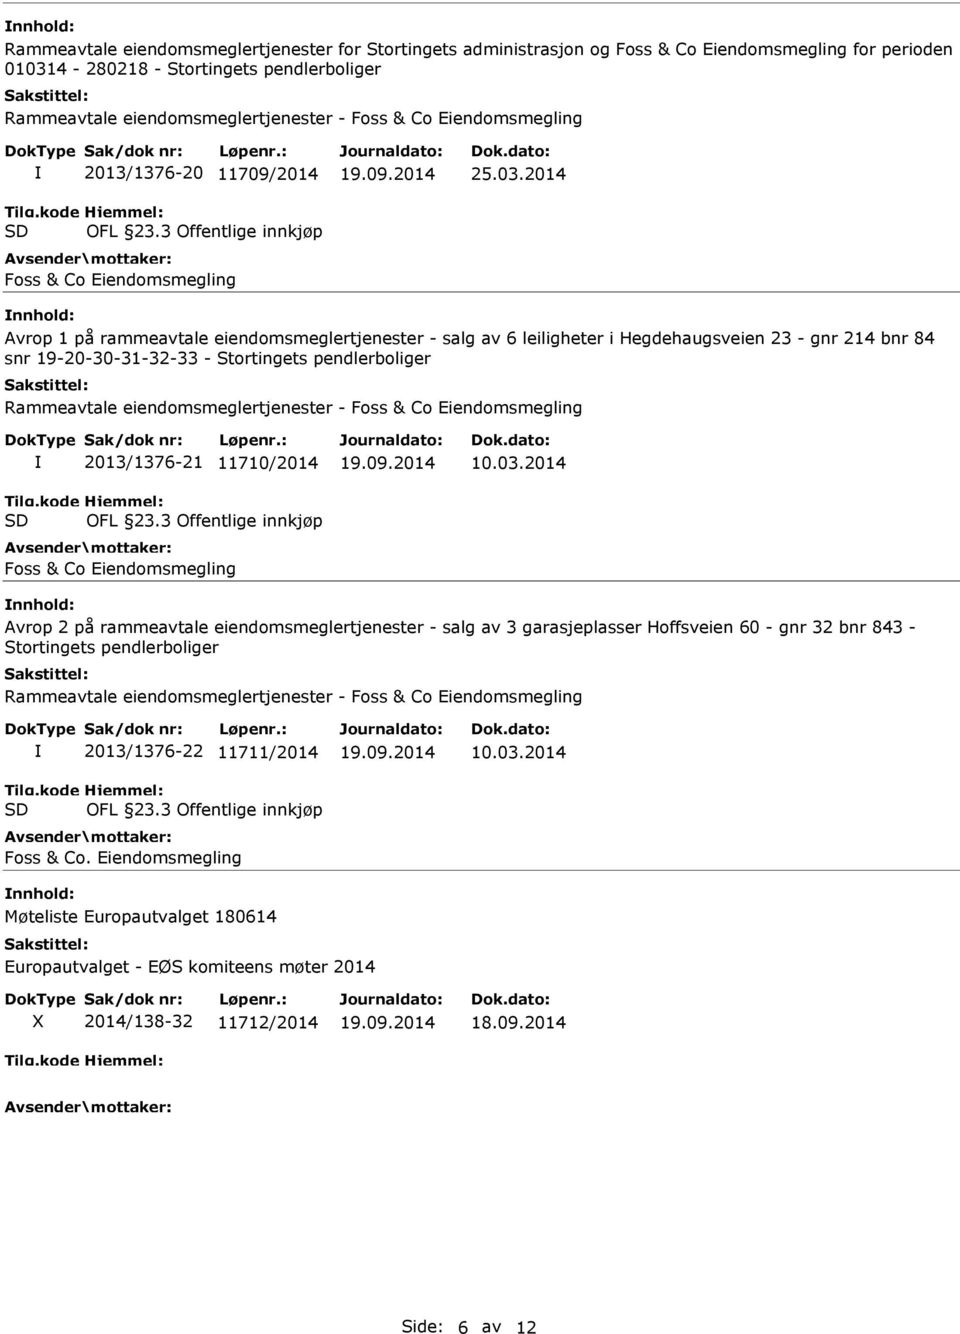 2014 nnhold: Avrop 1 på rammeavtale eiendomsmeglertjenester - salg av 6 leiligheter i Hegdehaugsveien 23 - gnr 214 bnr 84 snr 19-20-30-31-32-33 - Stortingets pendlerboliger Rammeavtale